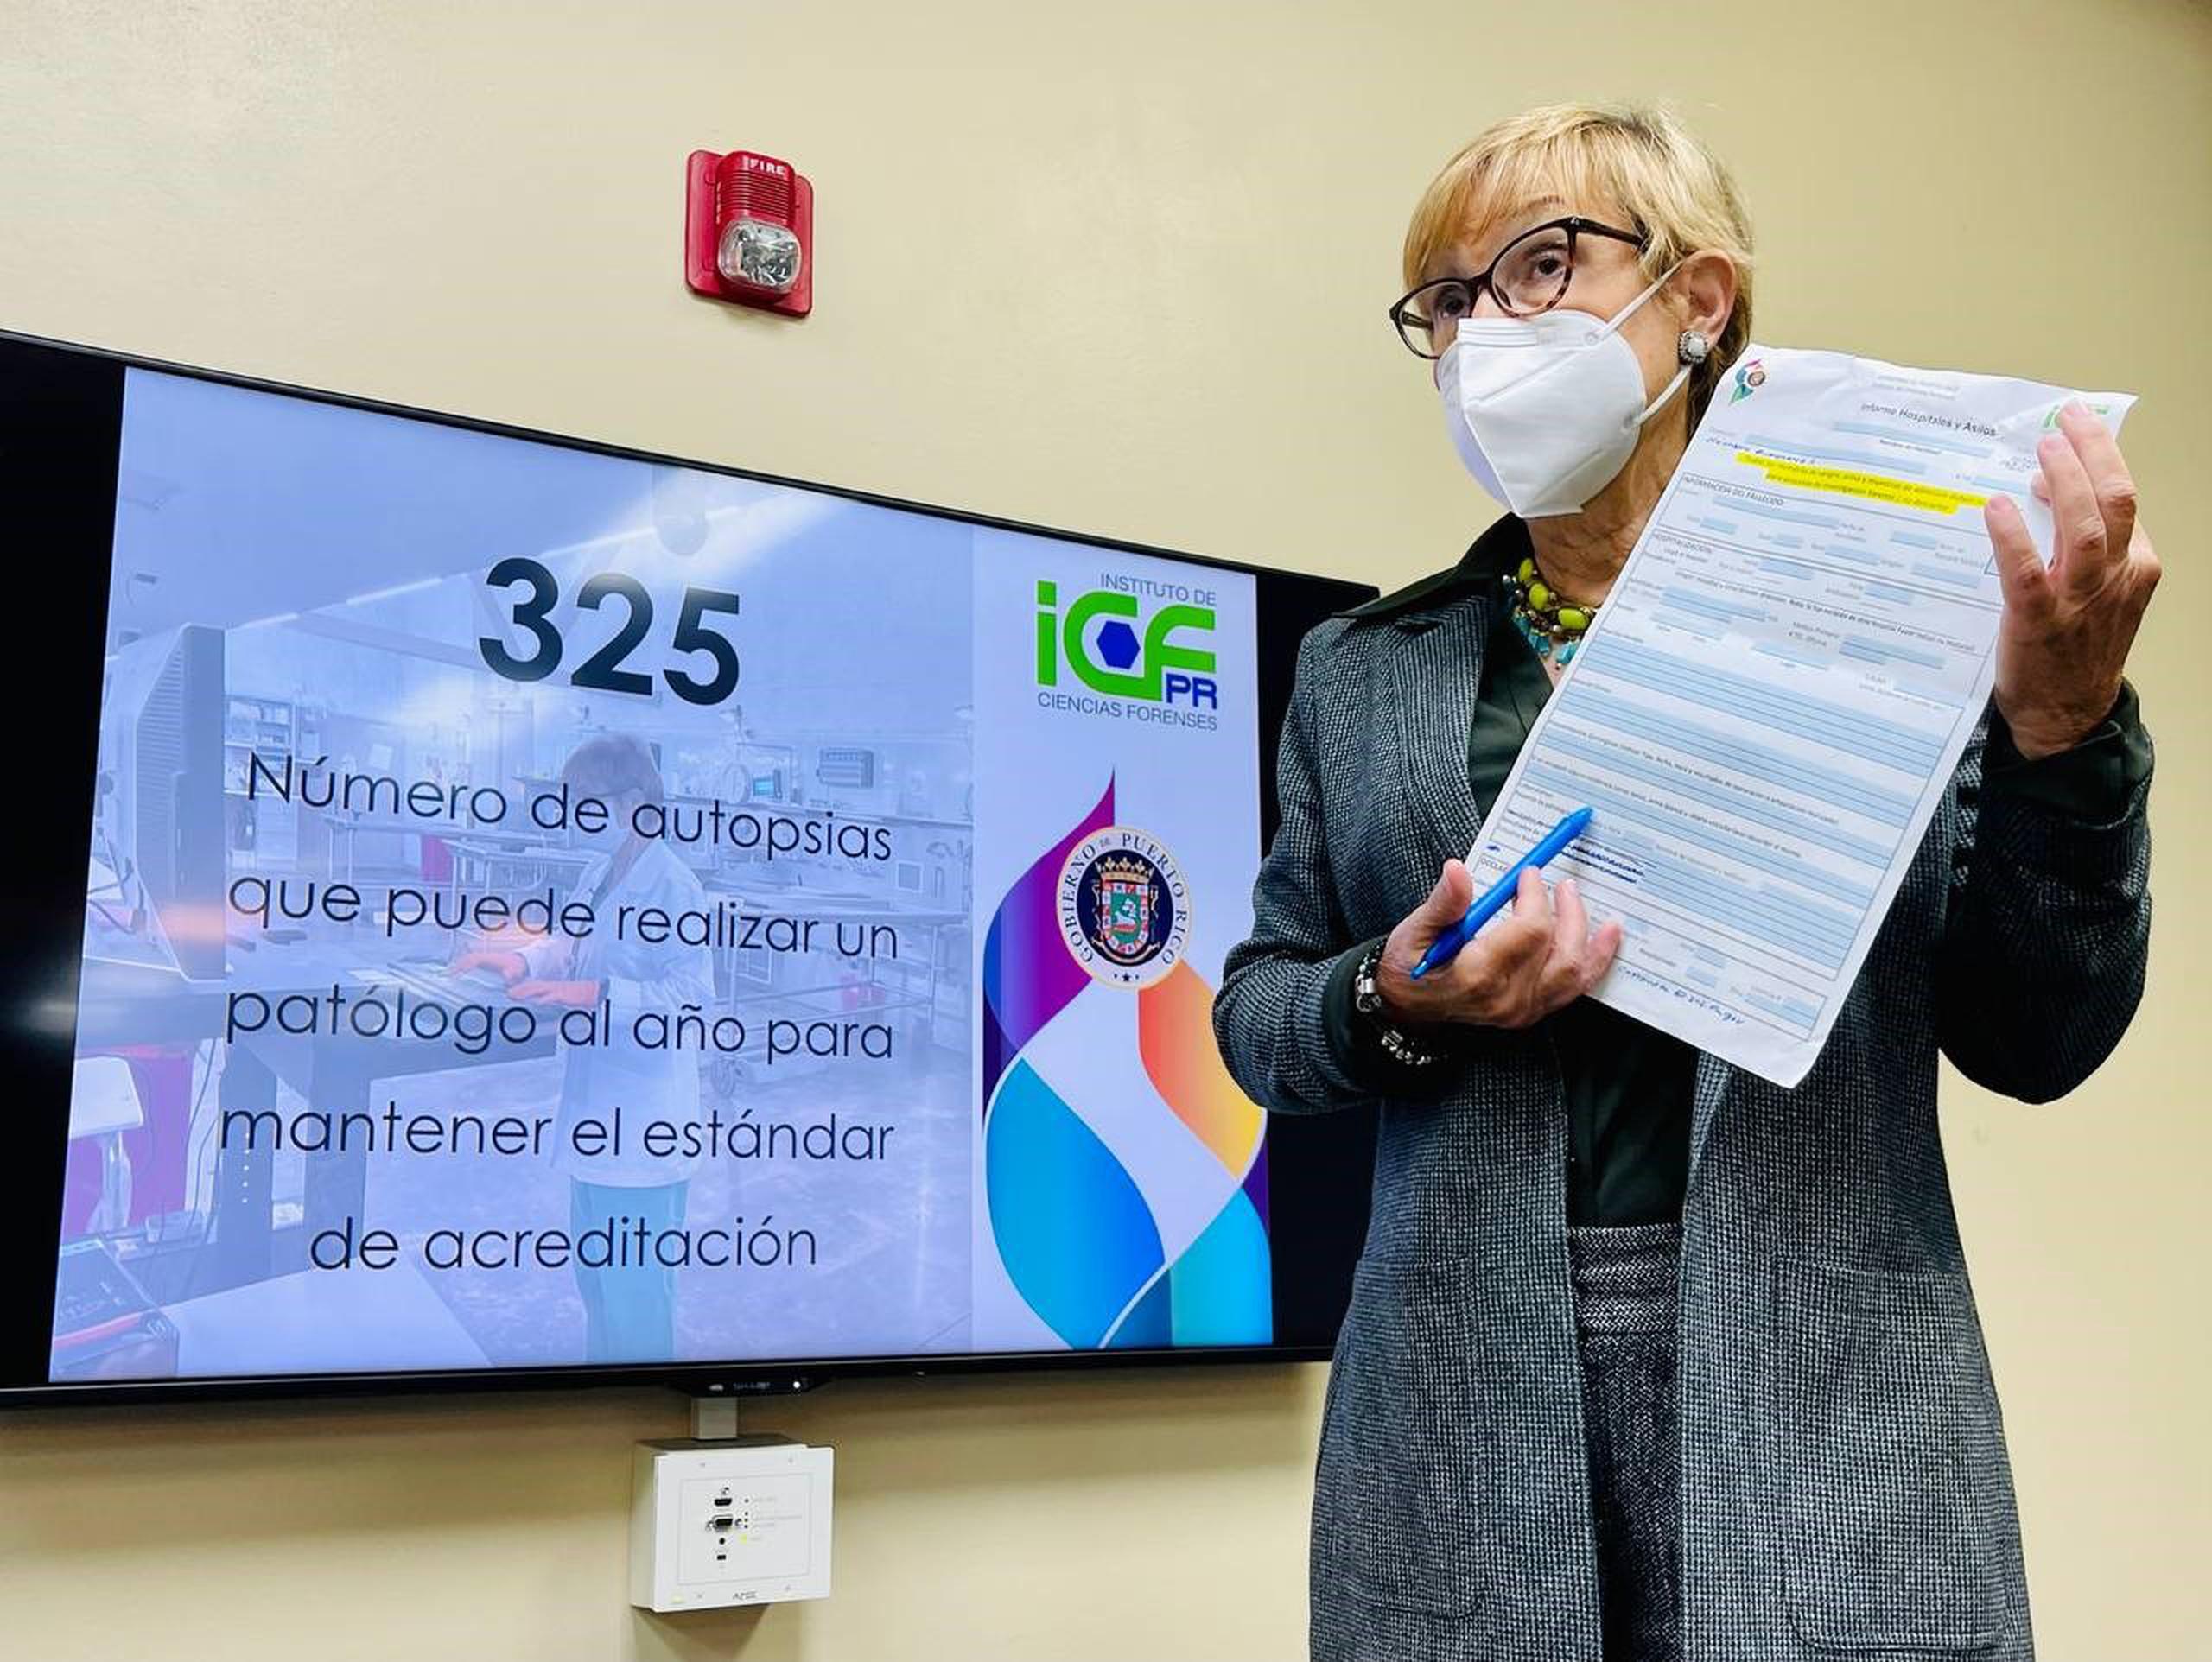 La directora del ICF aseguró que los patólogos se exceden en la cantidad de autopsias permitidas, lo que también afecta la acreditación.